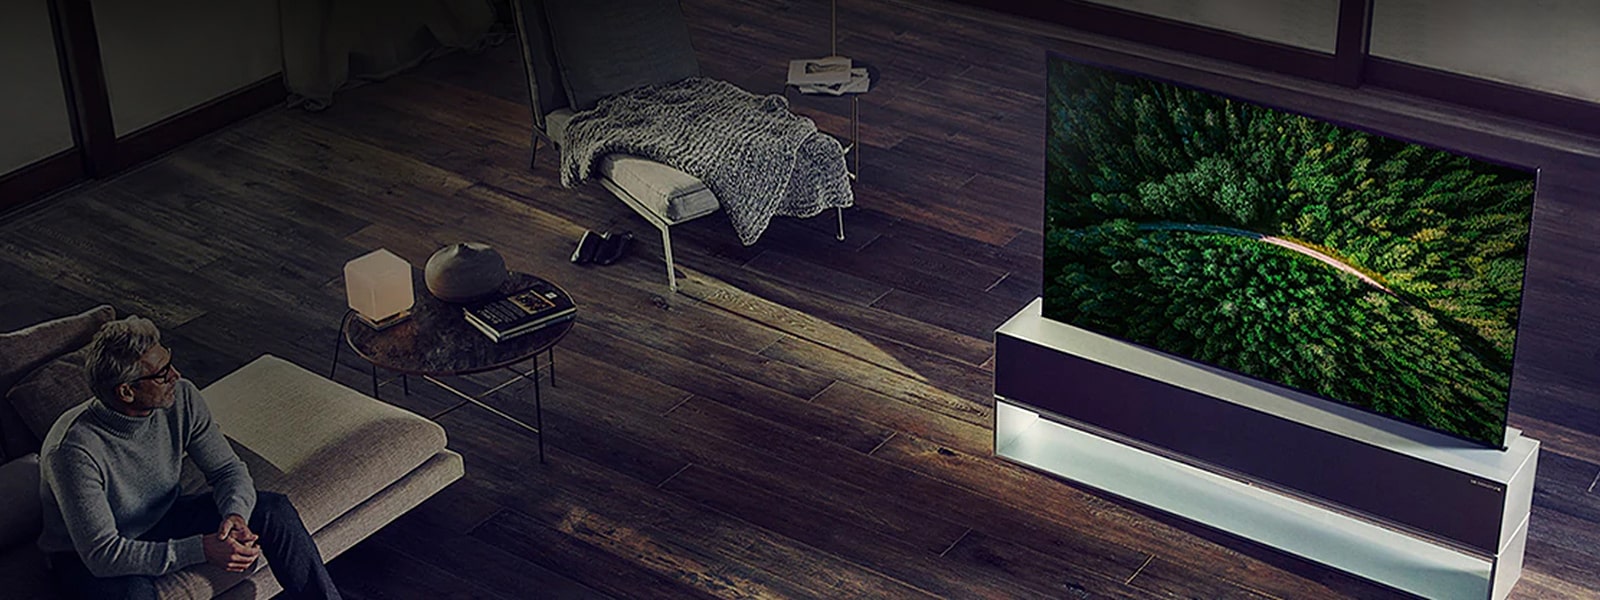 Telewizor LG SIGNATURE Rollable OLED TV jest umieszczony na drewnianej podłodze w luksusowym salonie, a mężczyzna ogląda telewizję.